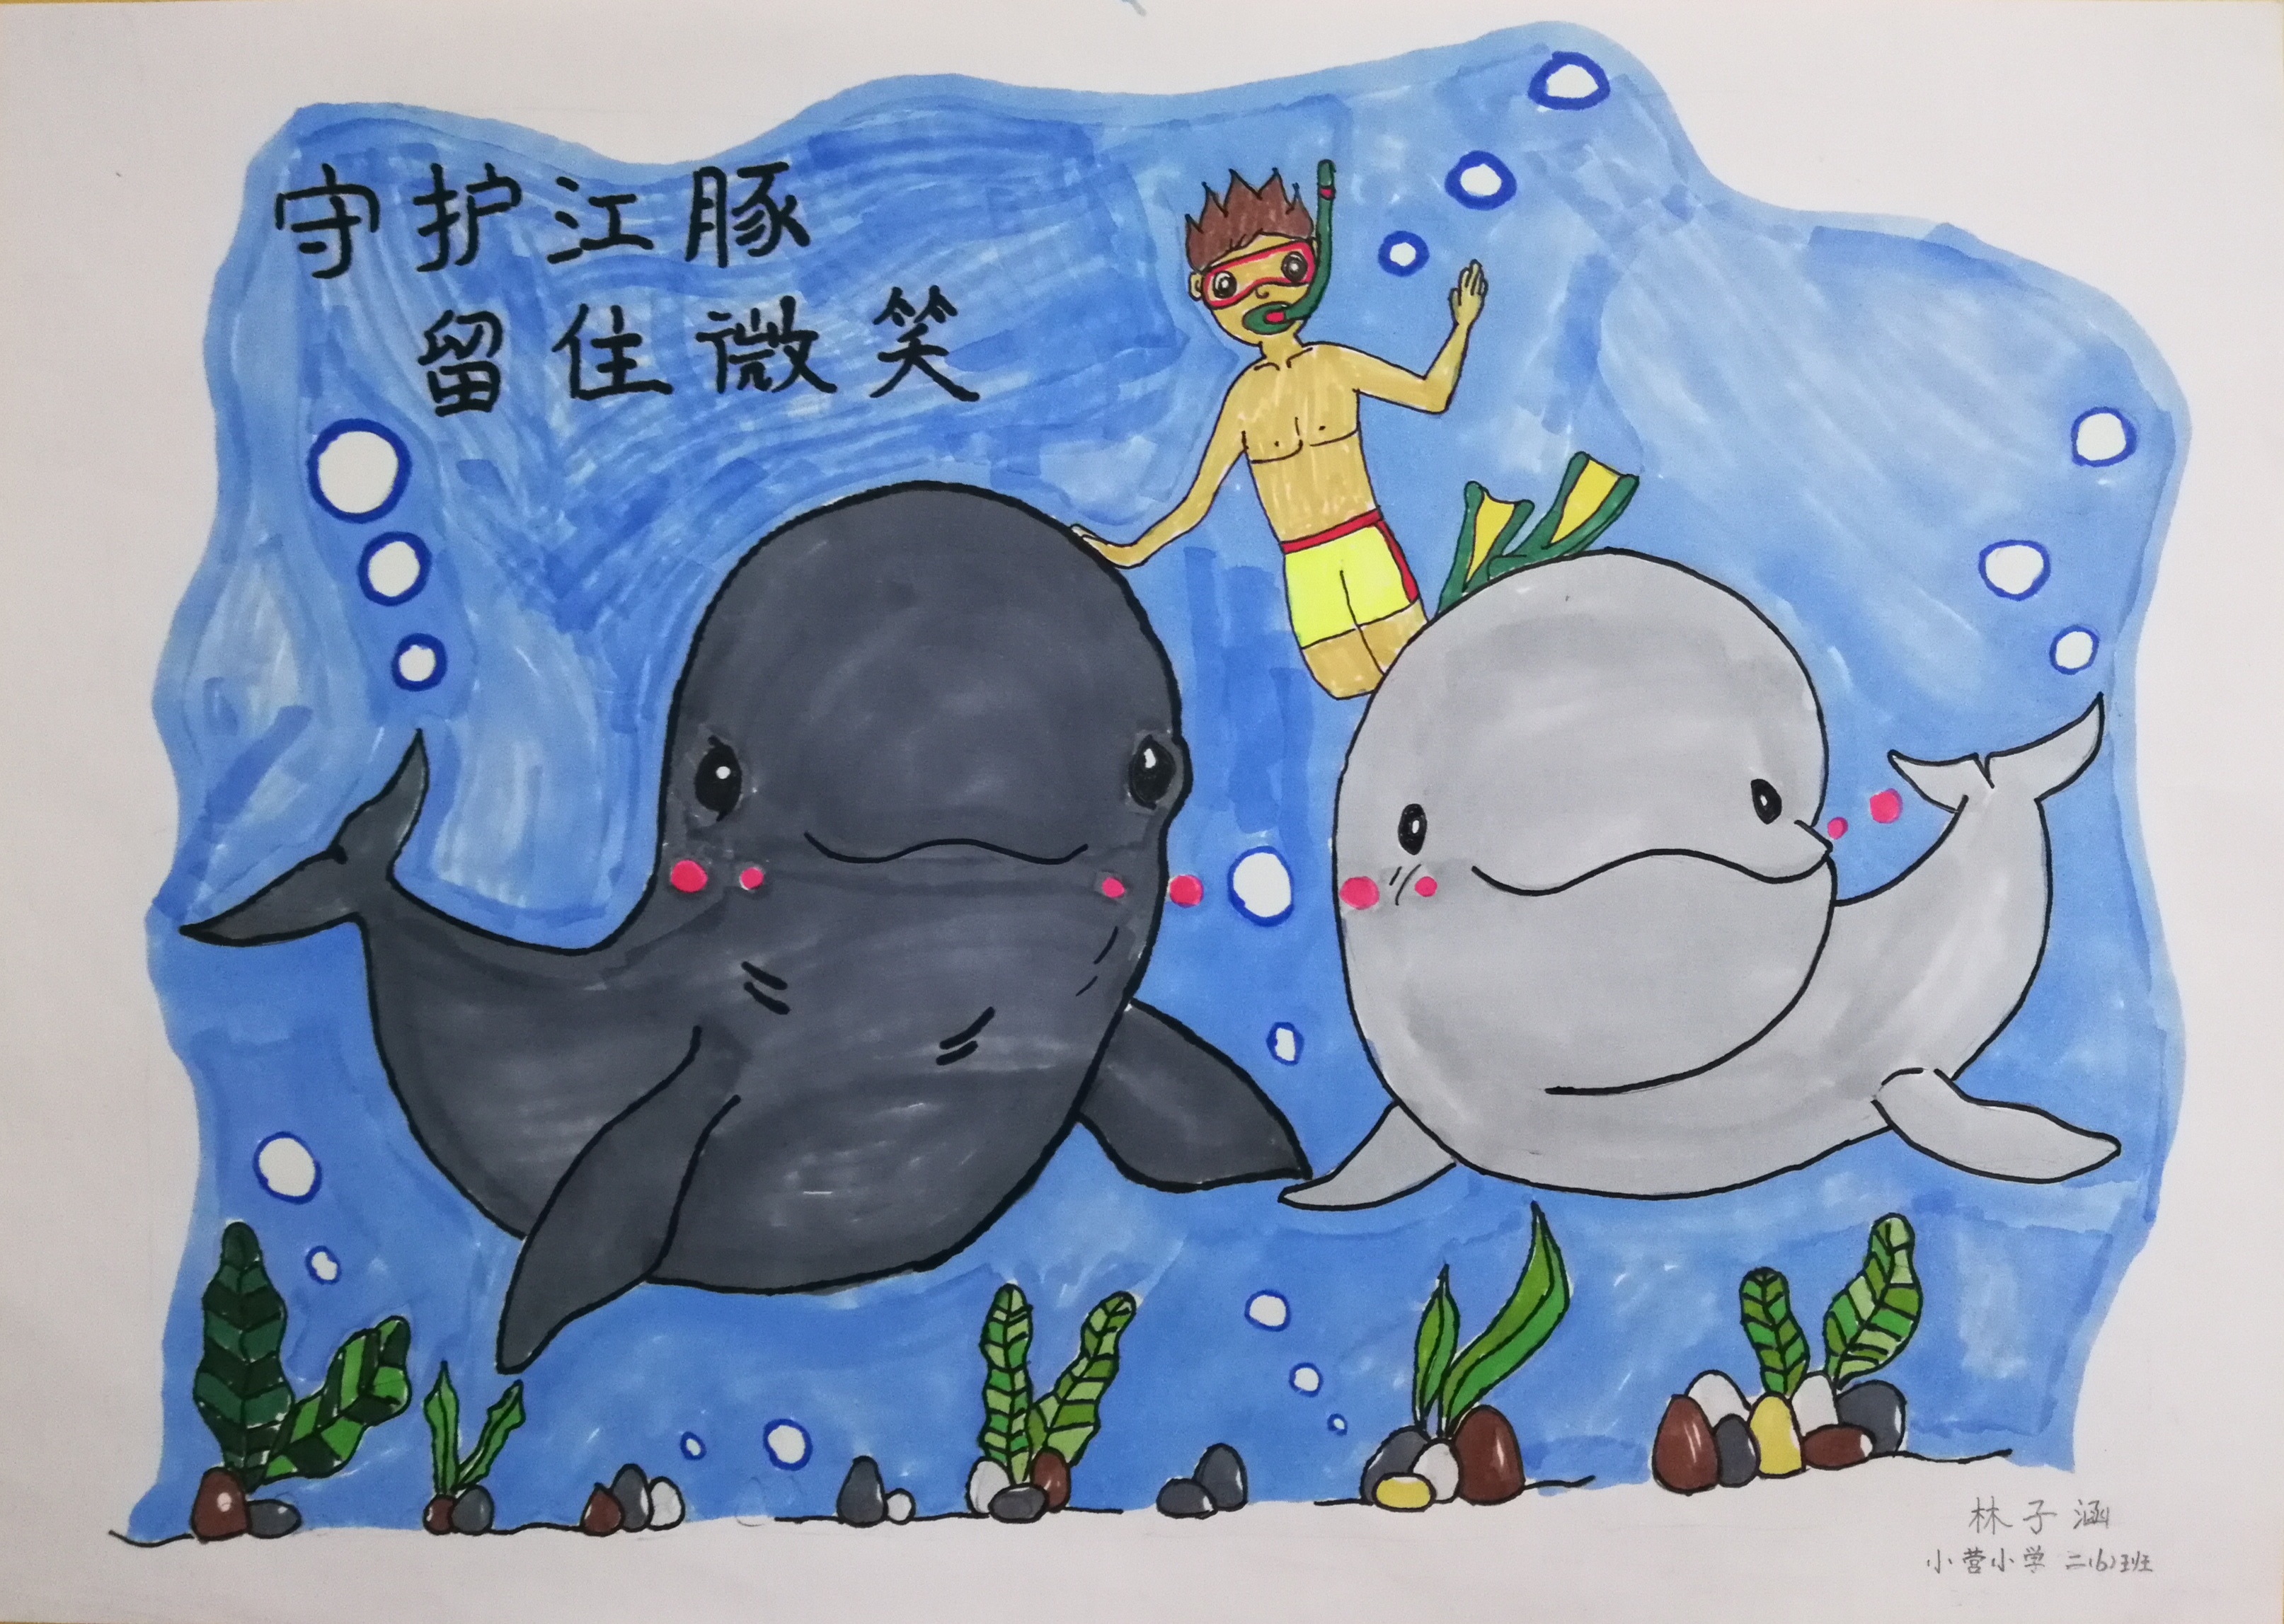 林子涵的绘画作品《守护江豚,留住微笑》   通讯员 王青颖 交汇点